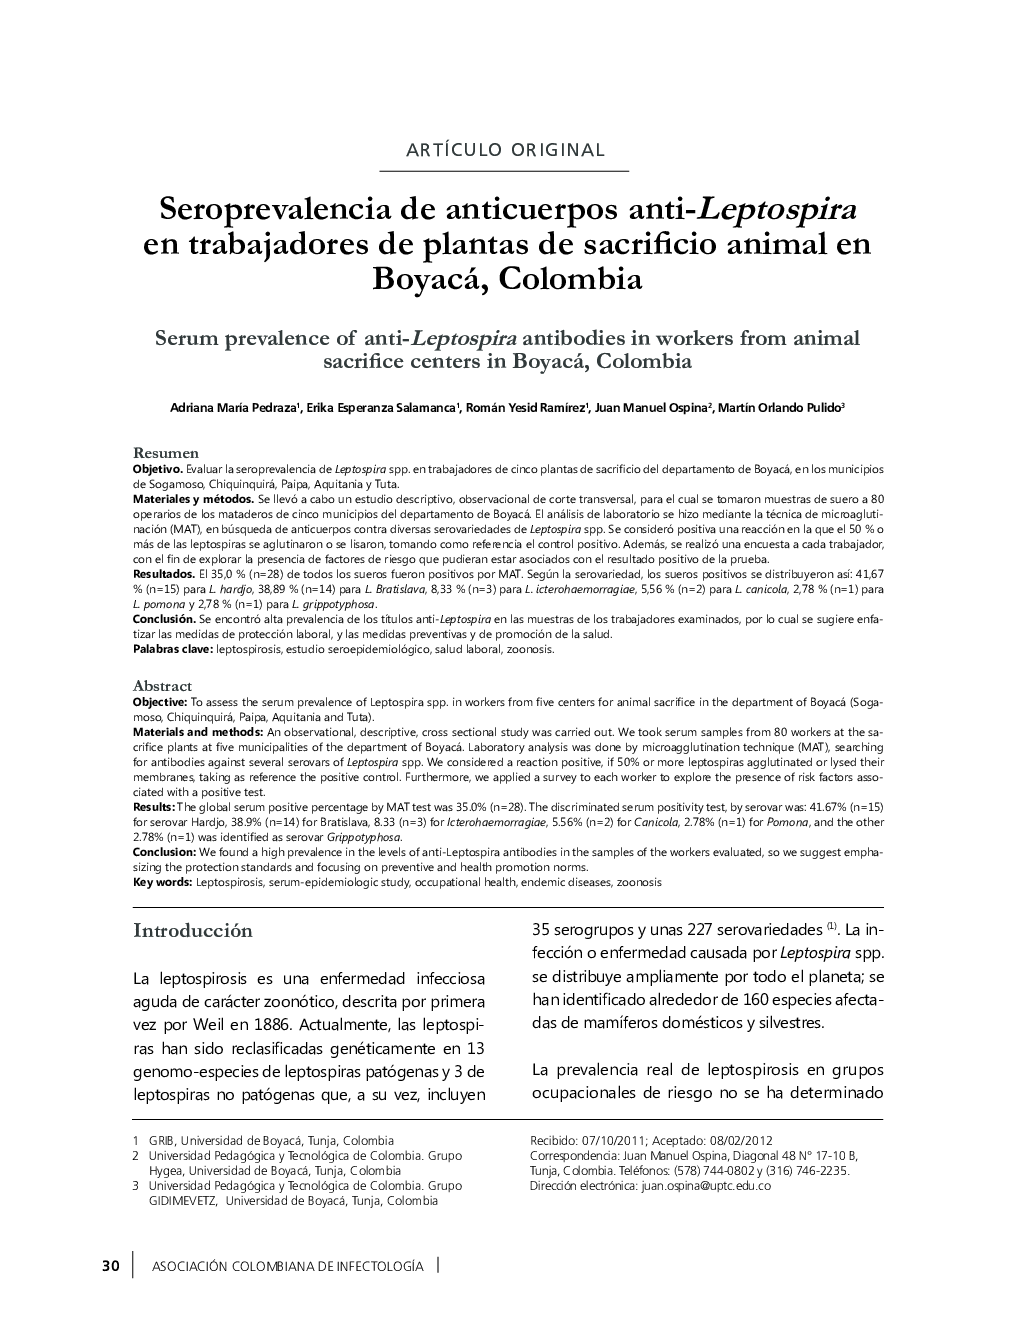 Seroprevalencia de anticuerpos anti-Leptospira en trabajadores de plantas de sacrificio animal en Boyacá, Colombia